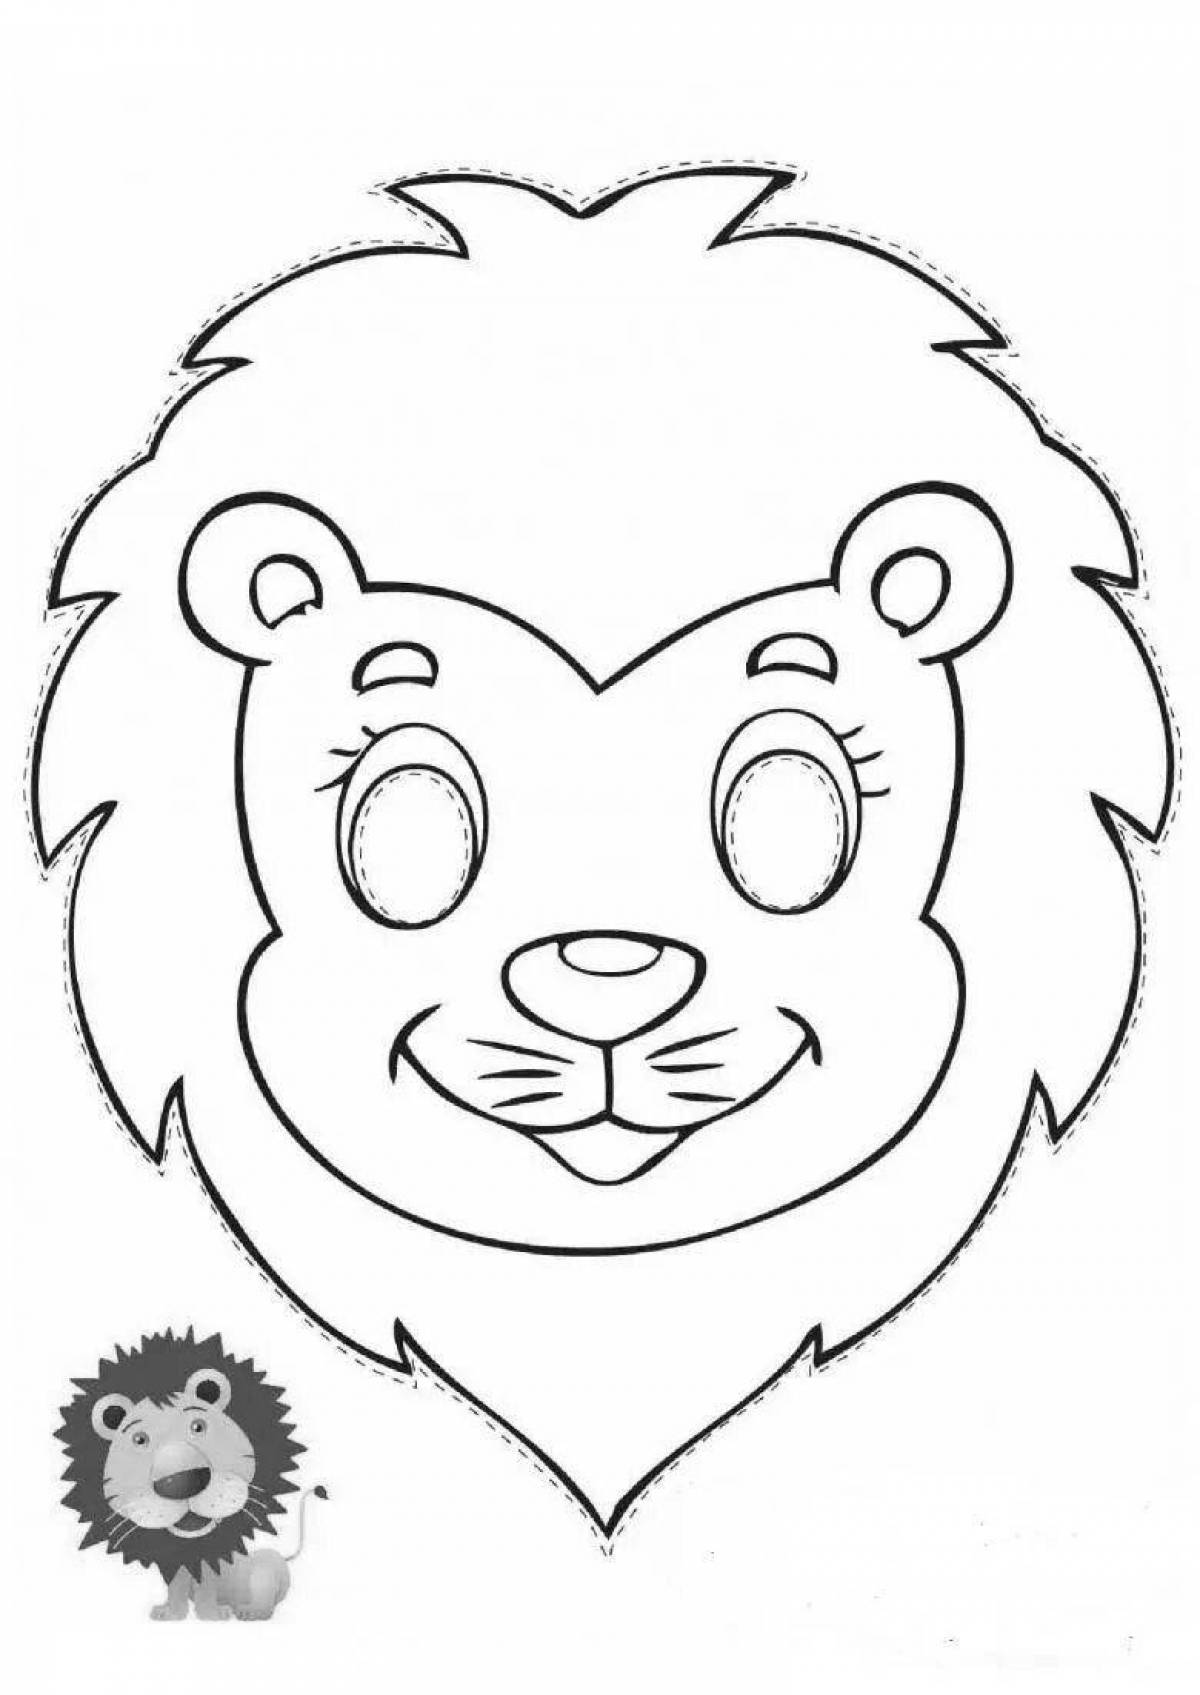 Lion muzzle coloring page